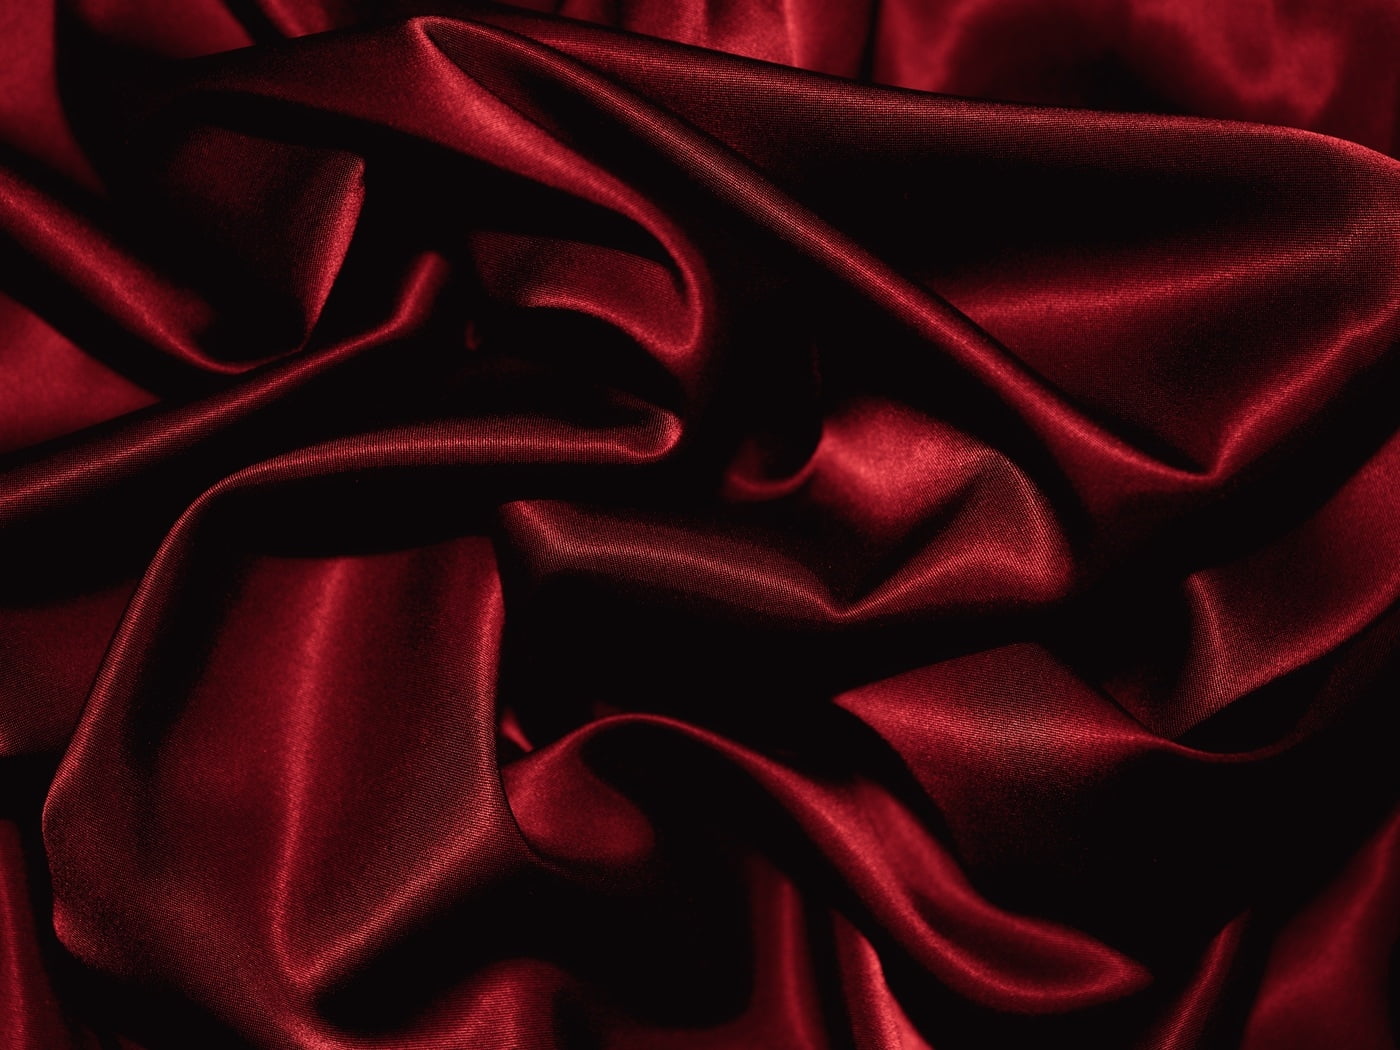 papier peint en soie noire,rouge,soie,satin,textile,velours